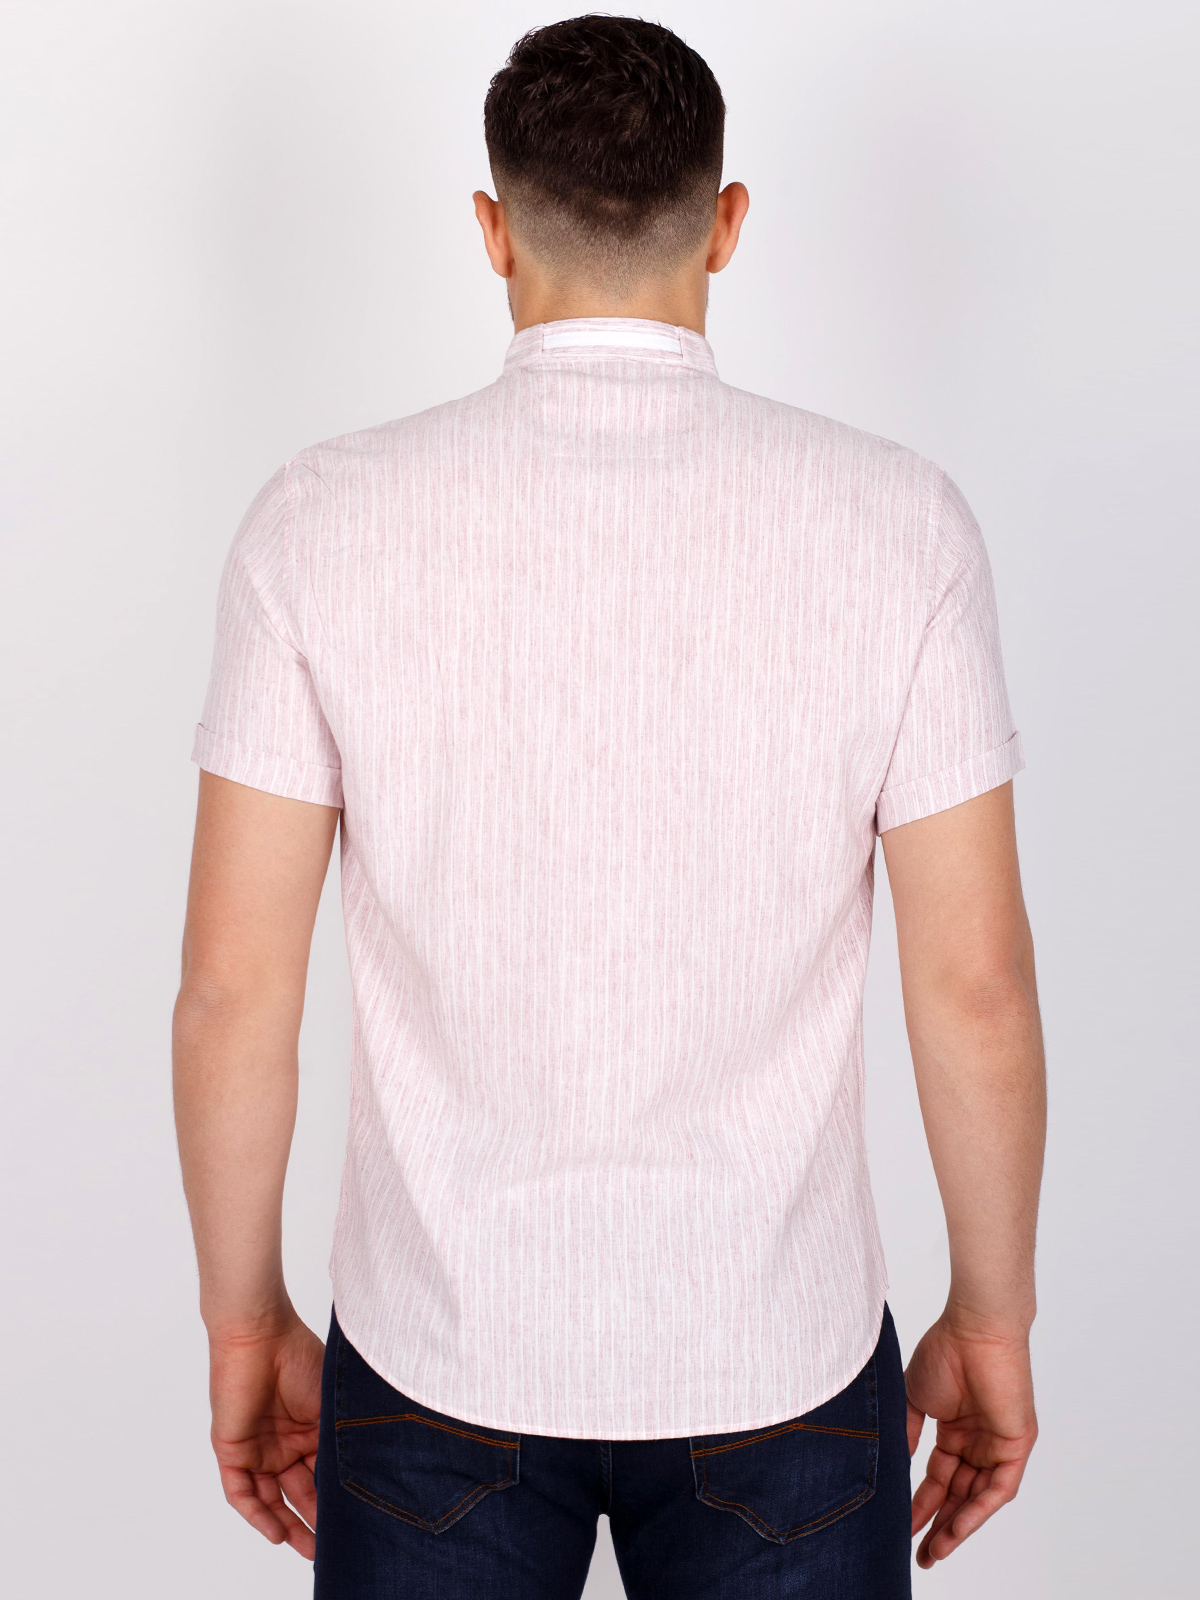 Απαλό ροζ και λευκό ριγέ πουκάμισο - 80223 € 16.31 img4